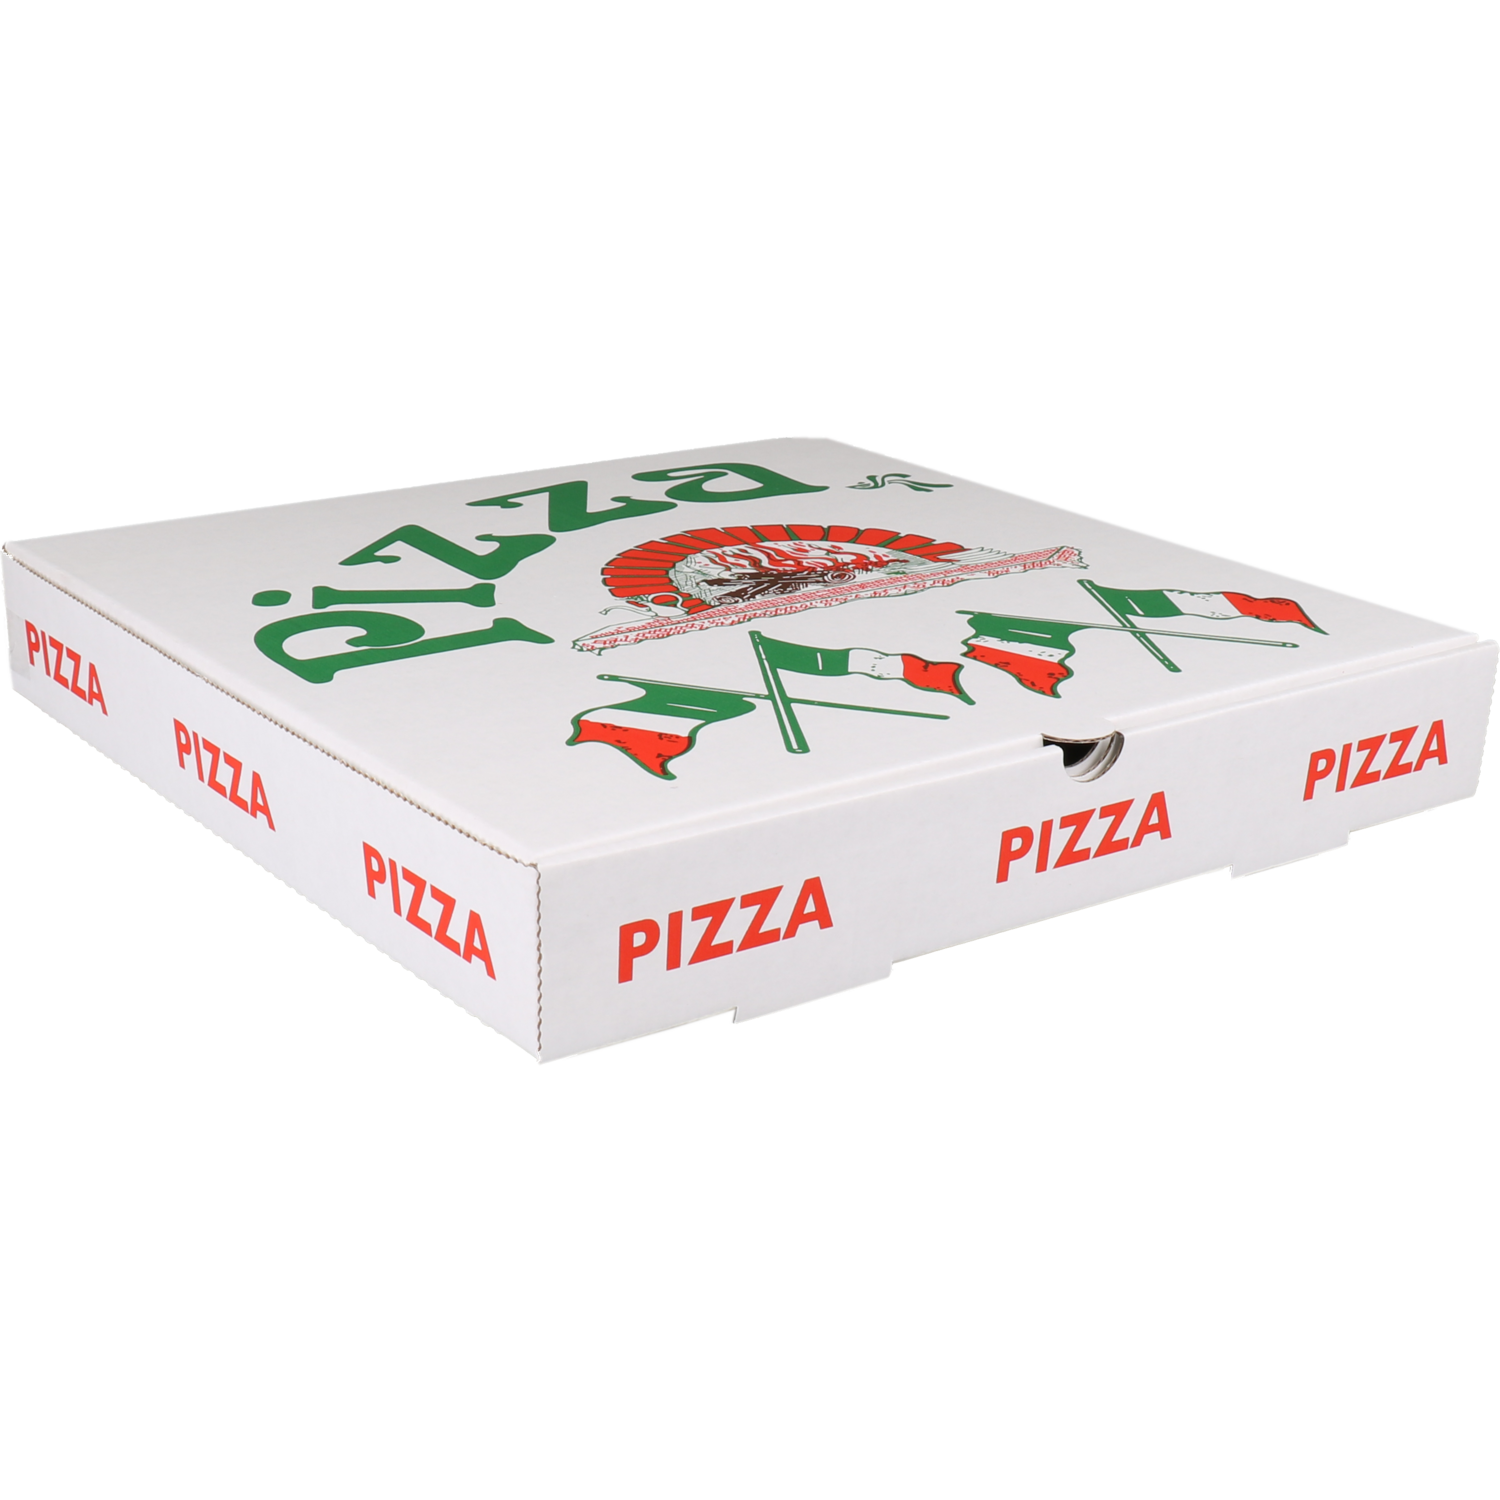  Pizza box, corrugated cardboard, 30x30x4.5cm, americano, white 1